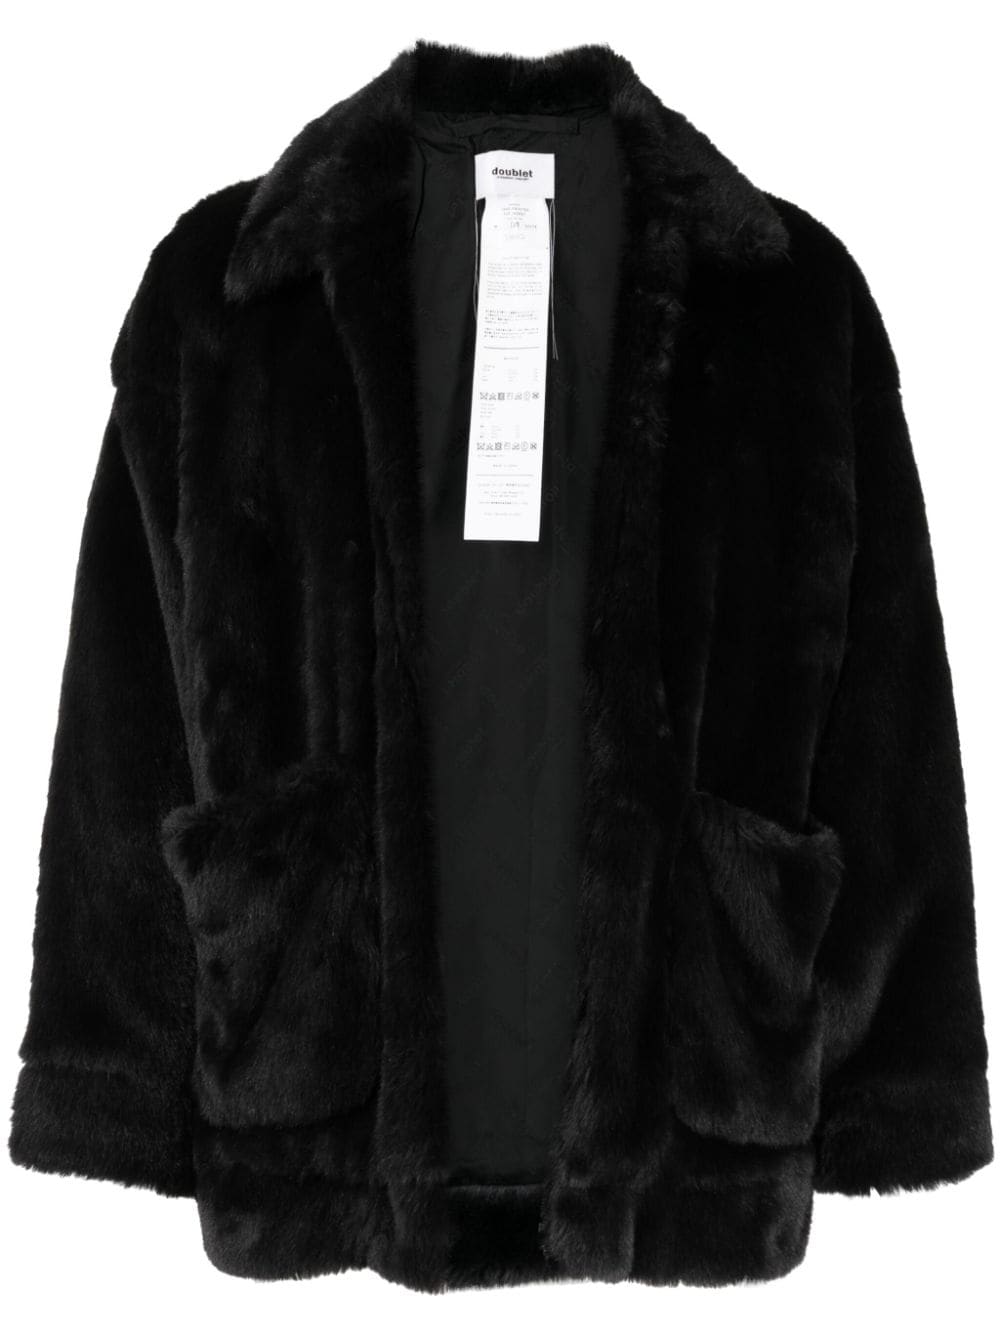 Doublet panda-motif faux-fur jacket - Black von Doublet